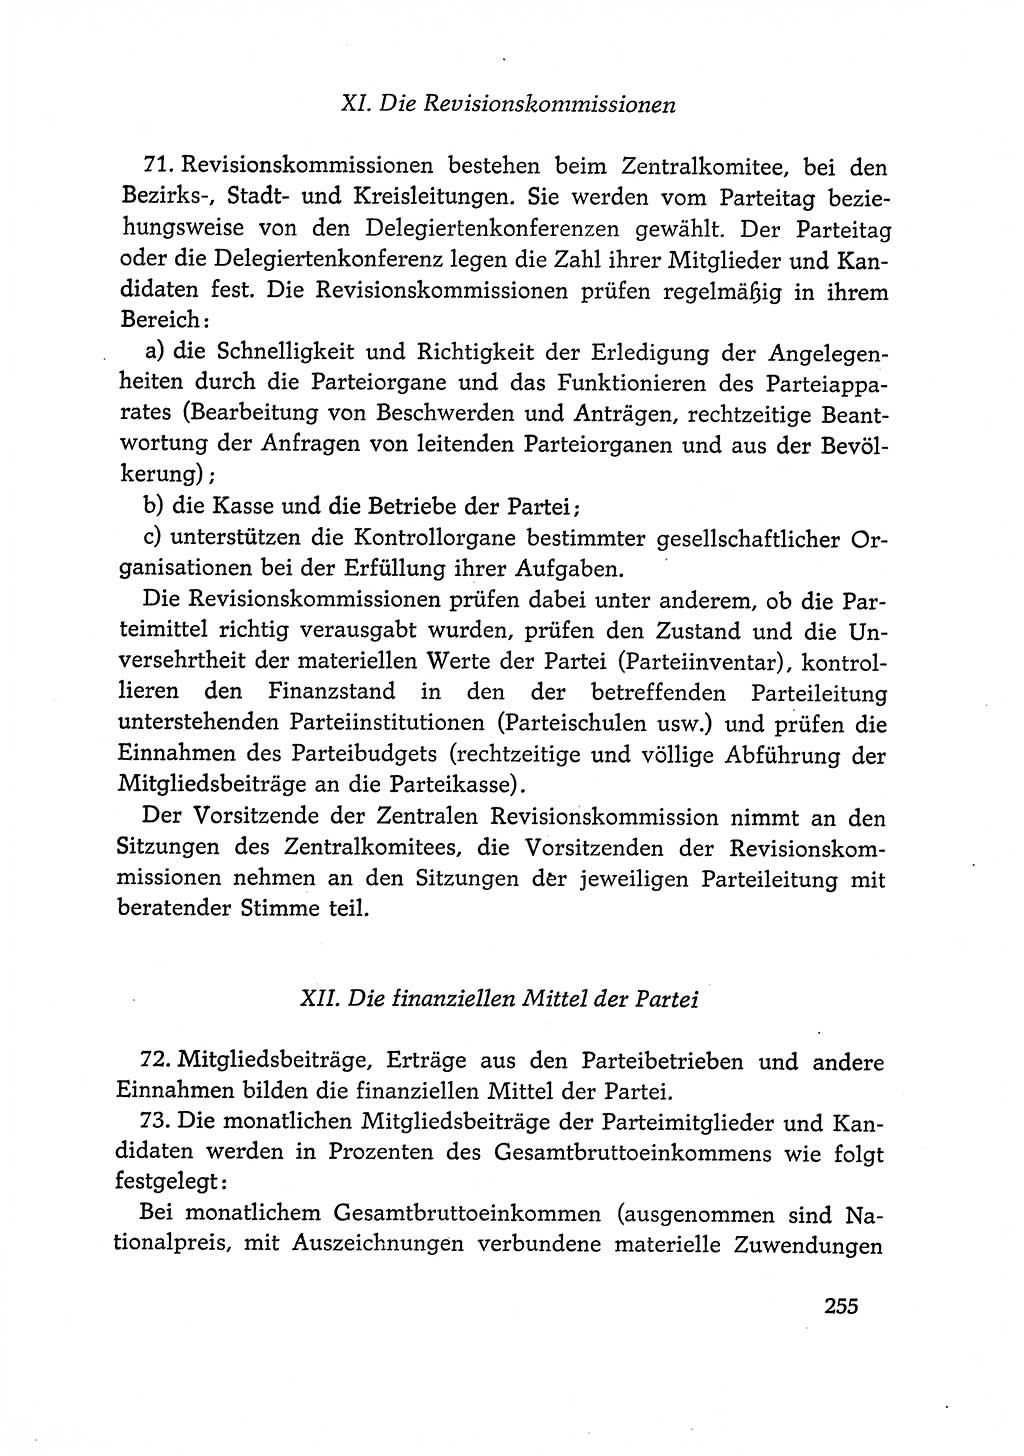 Dokumente der Sozialistischen Einheitspartei Deutschlands (SED) [Deutsche Demokratische Republik (DDR)] 1966-1967, Seite 255 (Dok. SED DDR 1966-1967, S. 255)